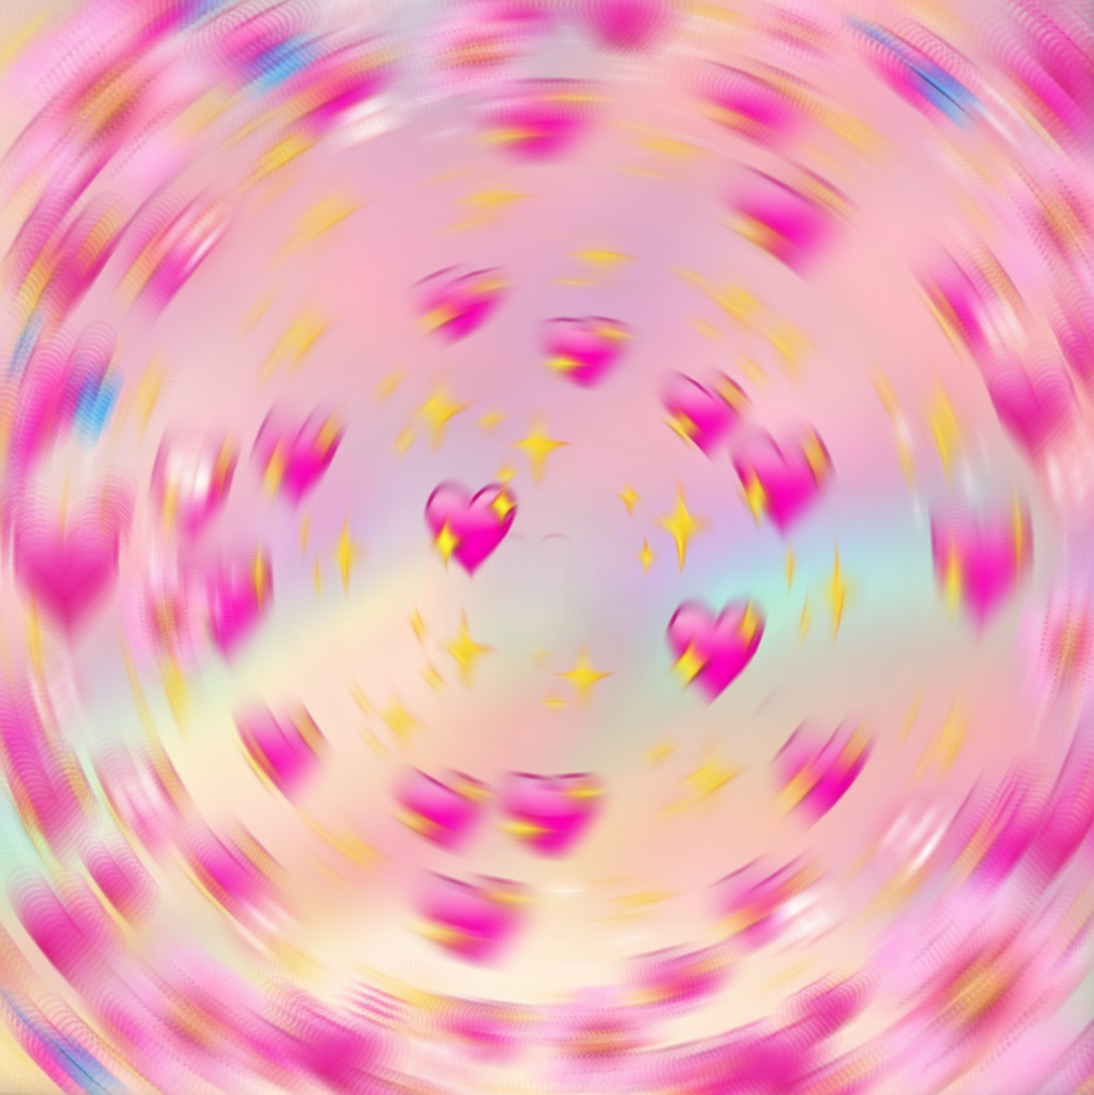 Free Background For Edits 🌸 - Blurred Heart Emoji ...